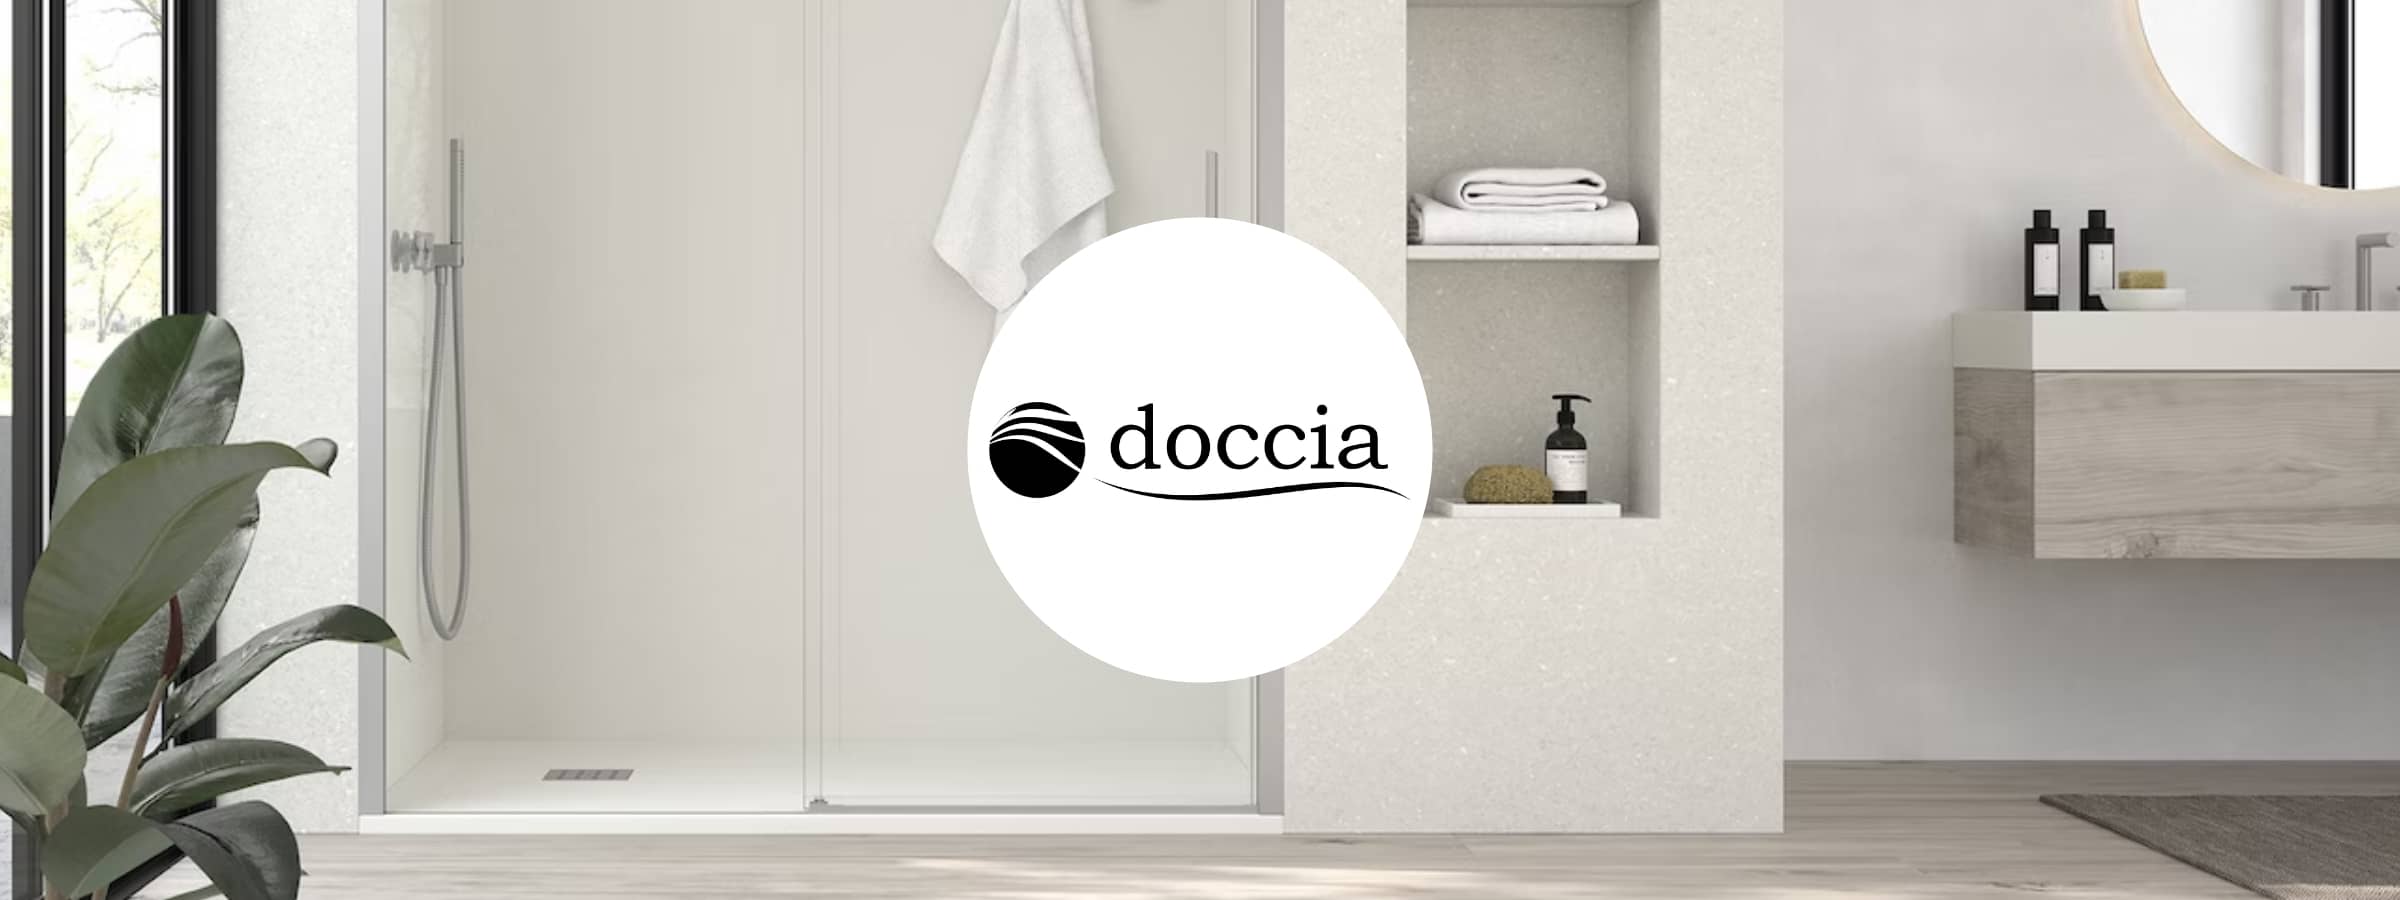 Colecciones y productos de la marca - Doccia